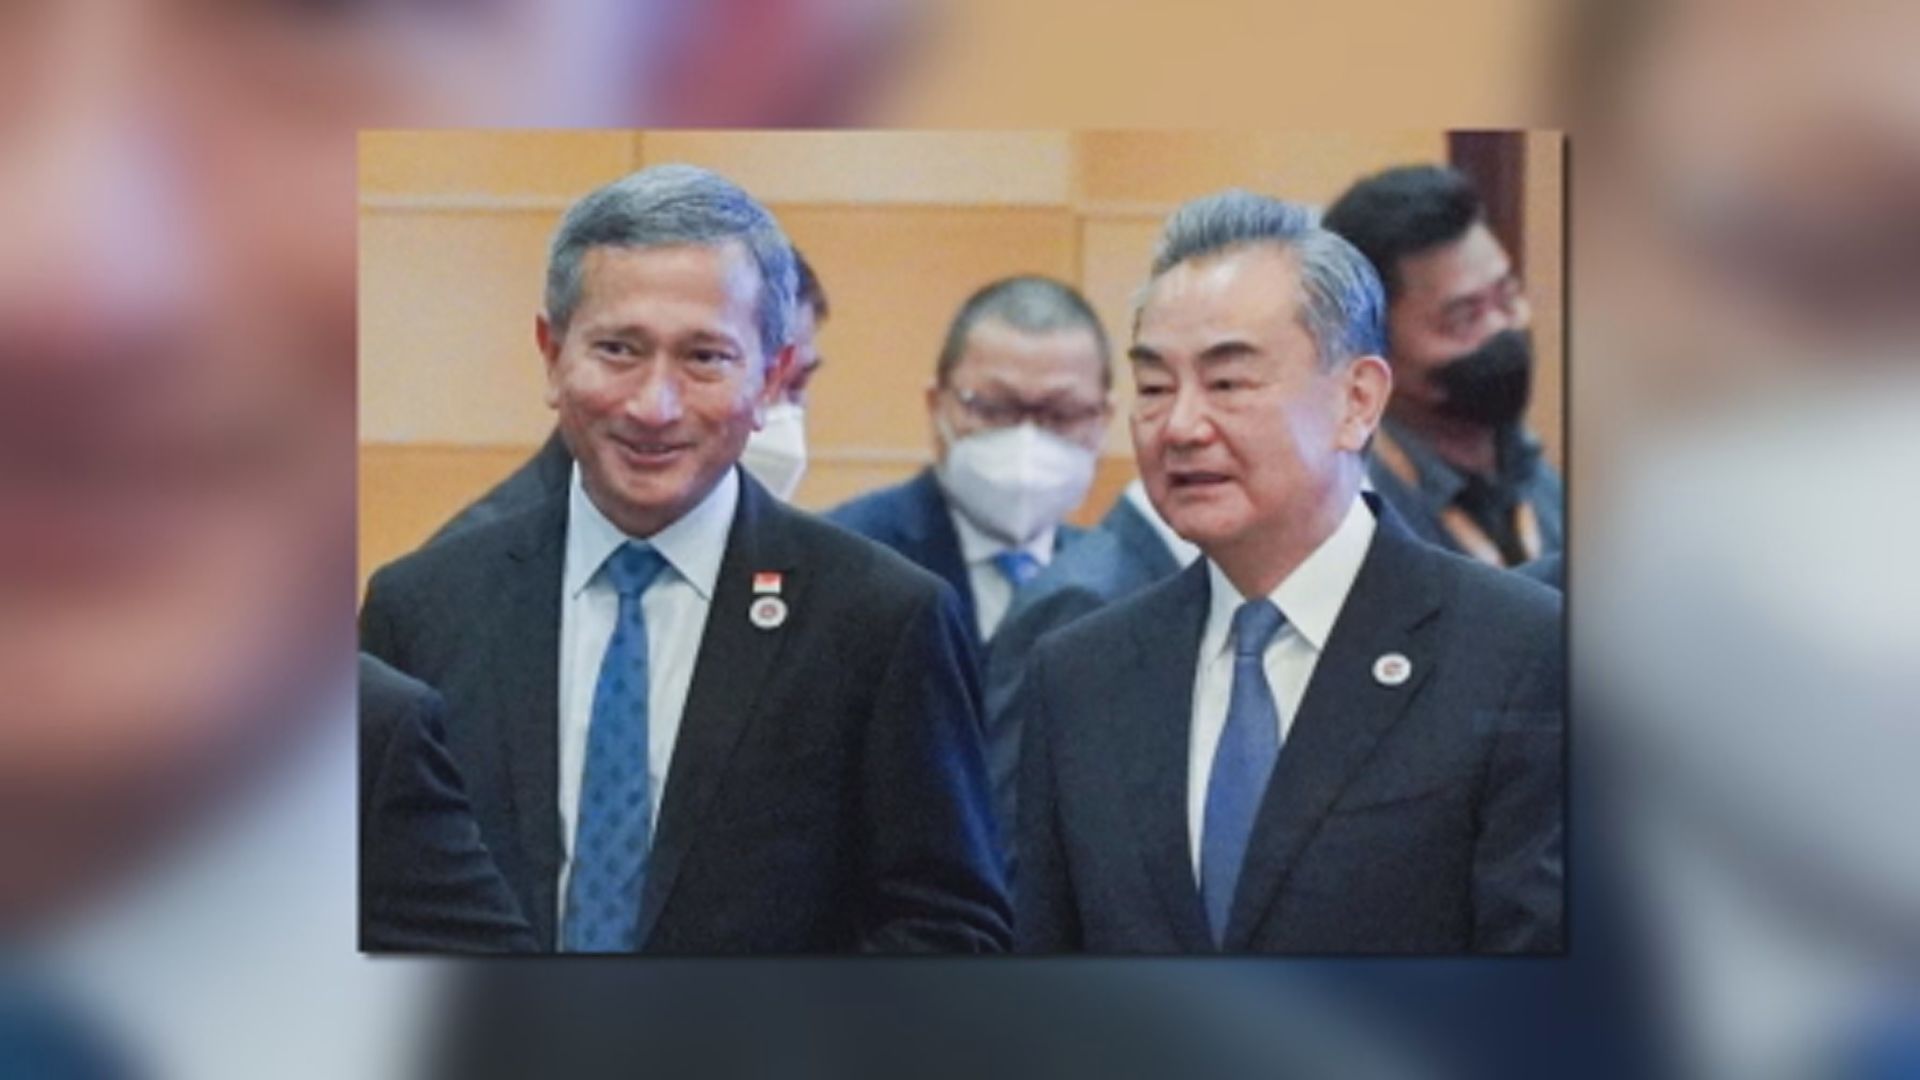 新加坡外長出席東盟外長會議後確診感染新冠病毒